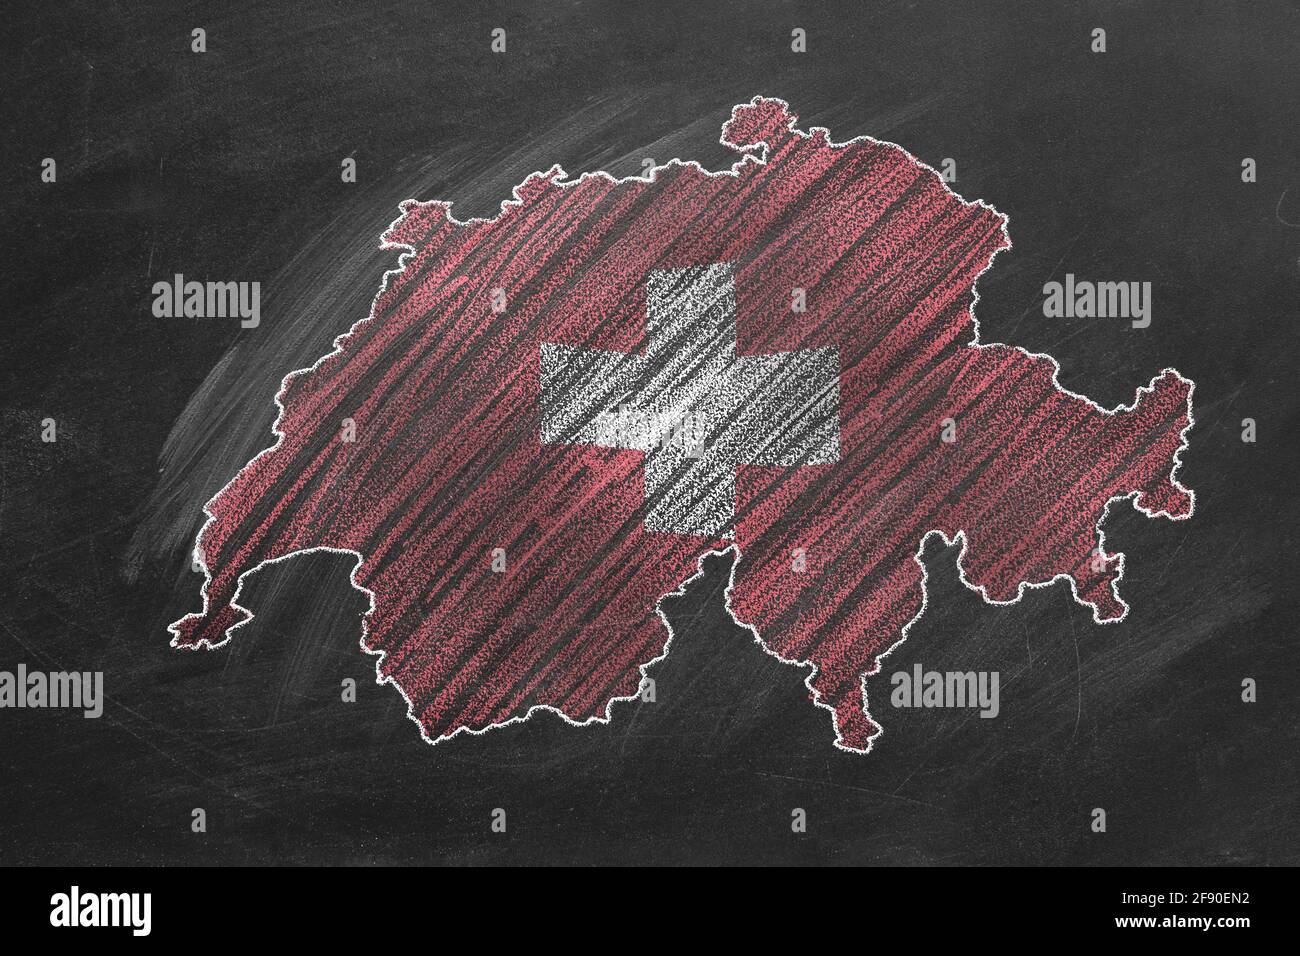 Landkarte und Flagge der Schweiz Zeichnung mit Kreide auf der Tafel. Eine  von einer großen Reihe von Karten und Flaggen verschiedener Länder.  Bildung, tra Stockfotografie - Alamy